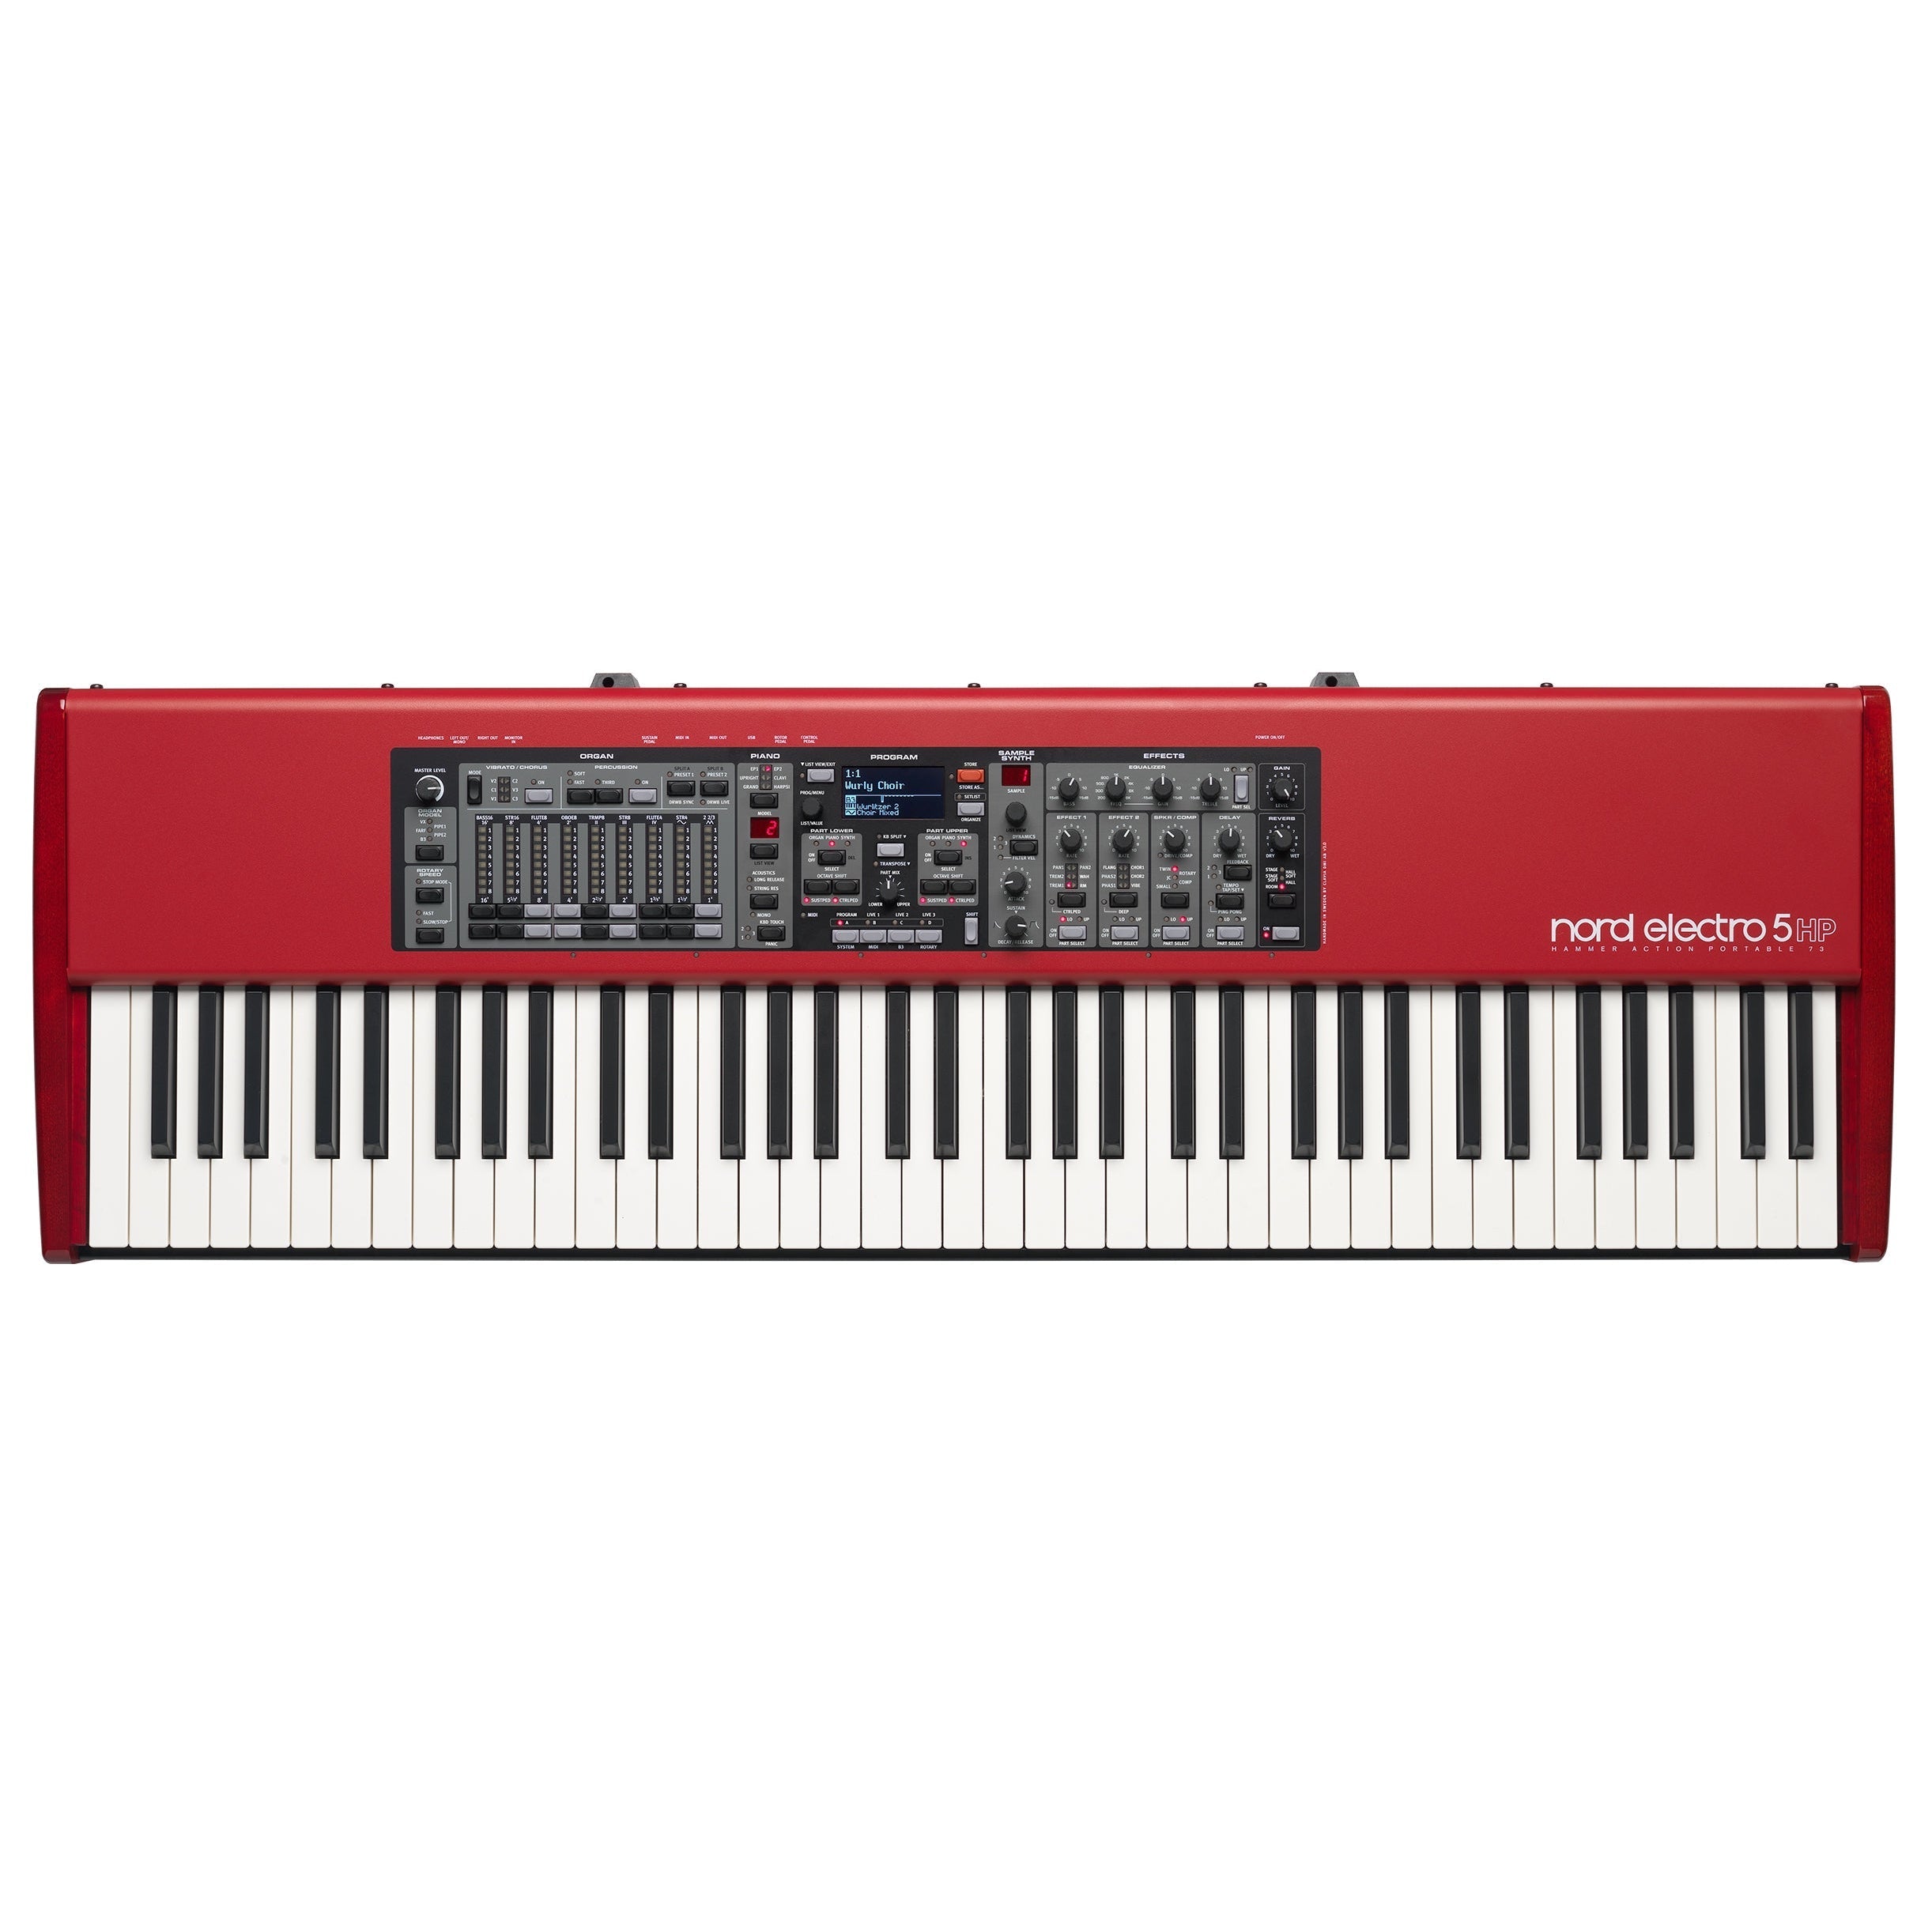 Đàn Piano Điện Nord Electro 5 HP - 73 Keys